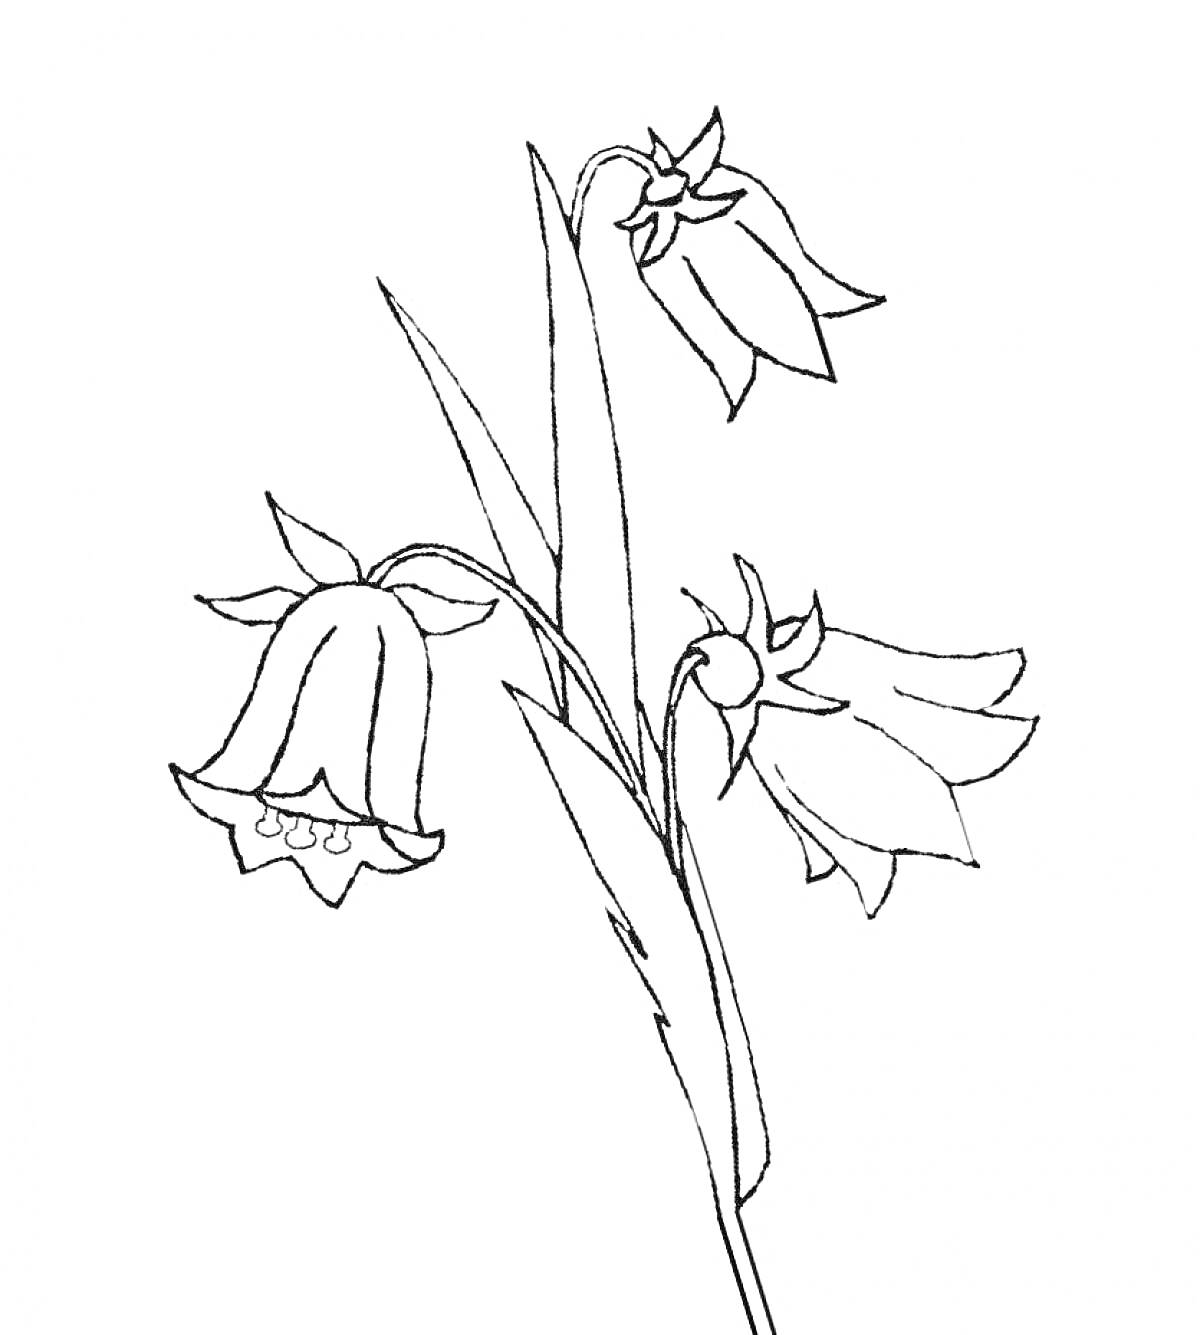 Три цветка колокольчика на стебле с листьями